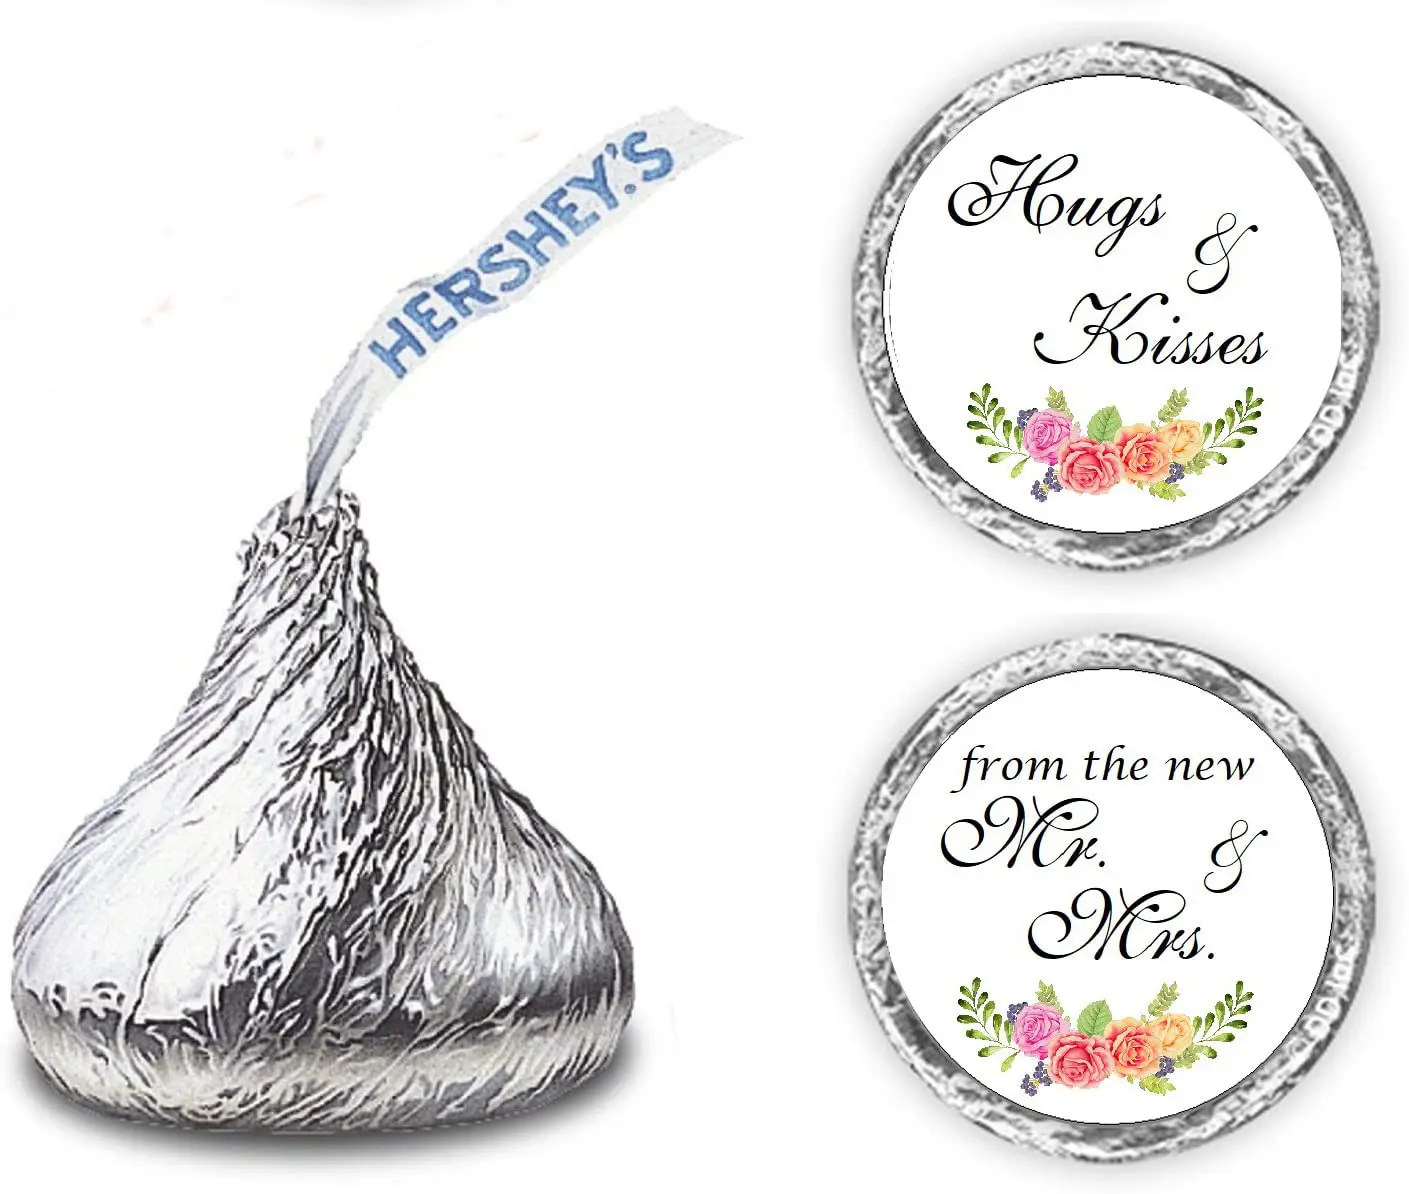 Benutzer definierte Schokoladen tropfen Etiketten Umarmungen und Küsse von den neuen Mr. & Mrs. Hershey Kiss Hochzeits aufklebern